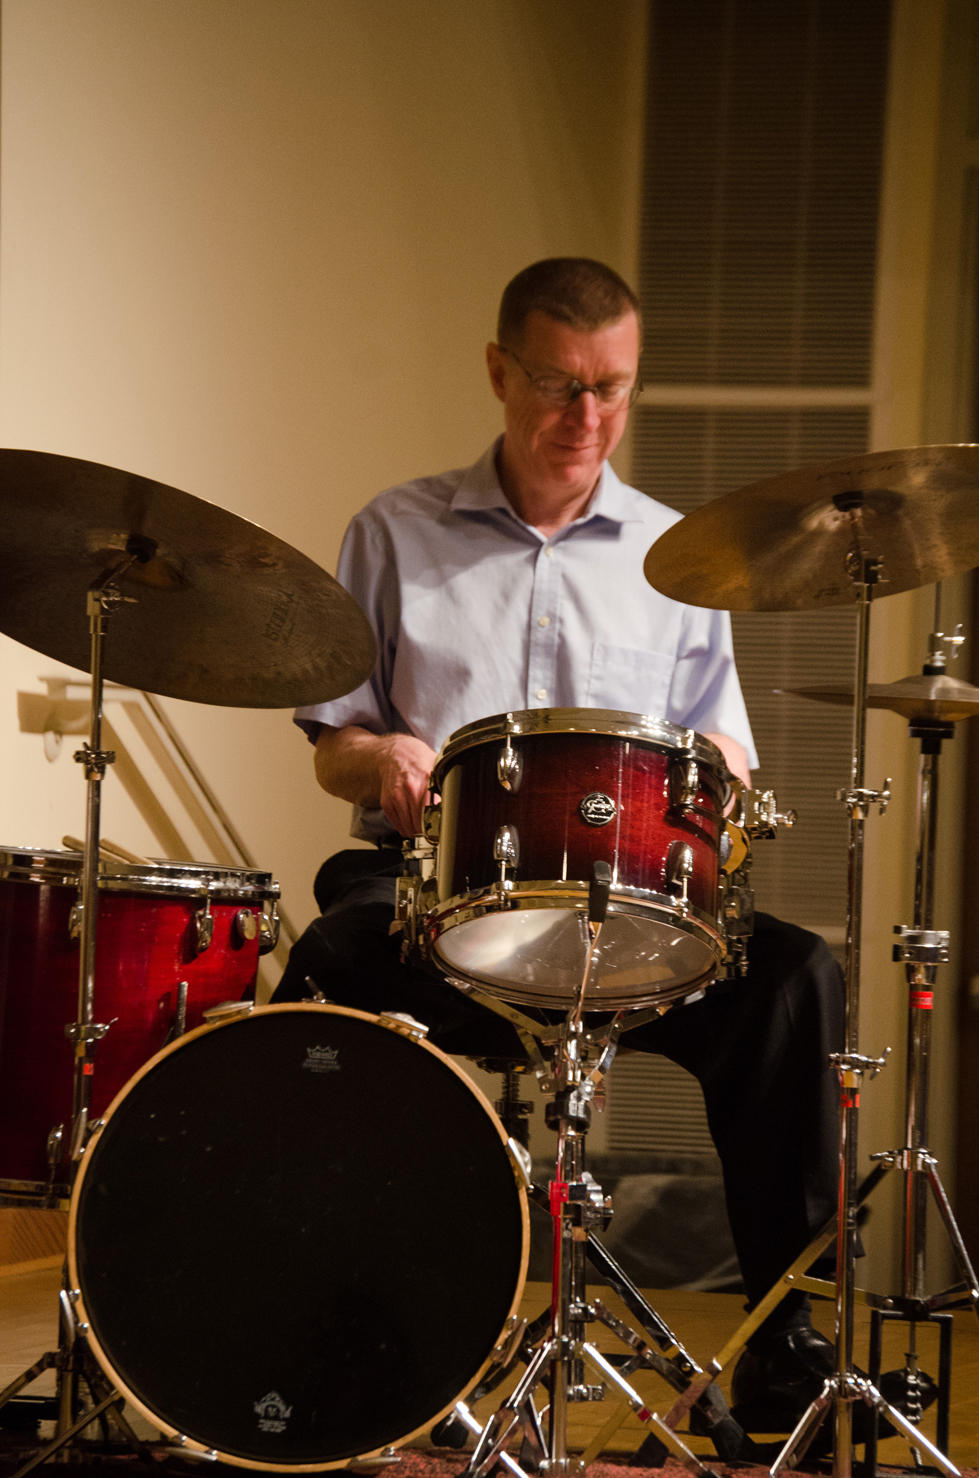 Drummer Jim West